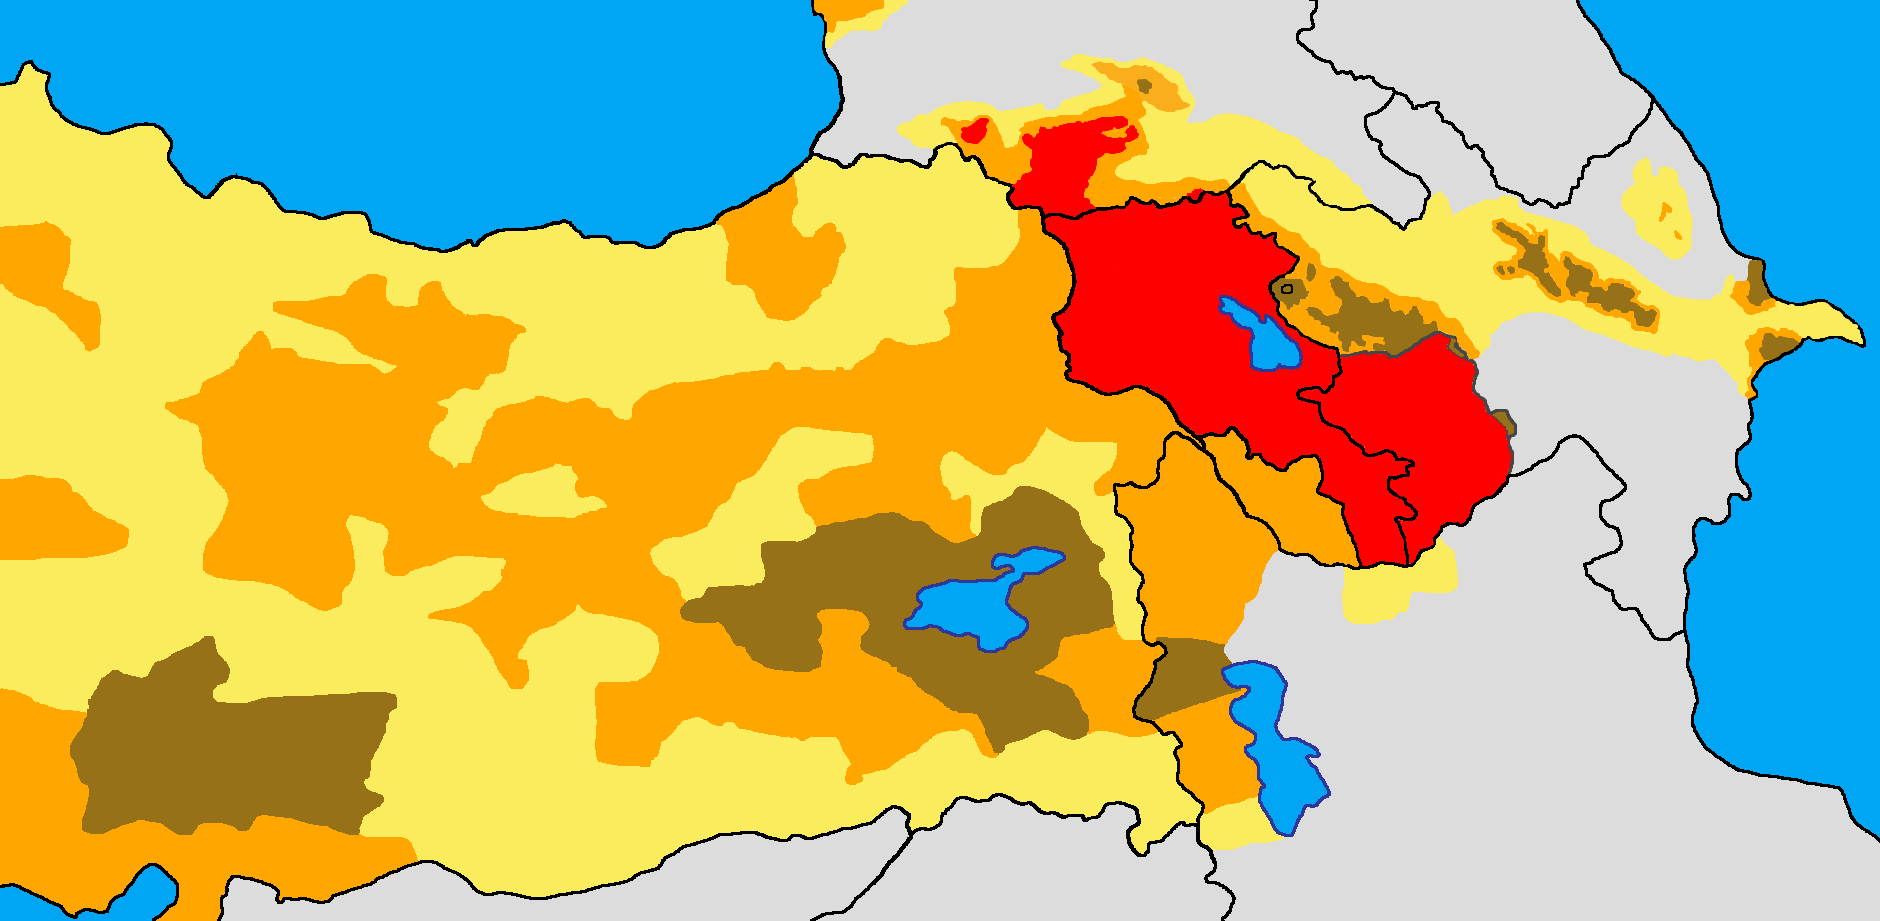 Ankara Ermenice Tercume, Ermenice Yeminli Tercüme, Ankara Ermenice Yeminli Tercüme, Kızılay Ermenice Yeminli Tercüme